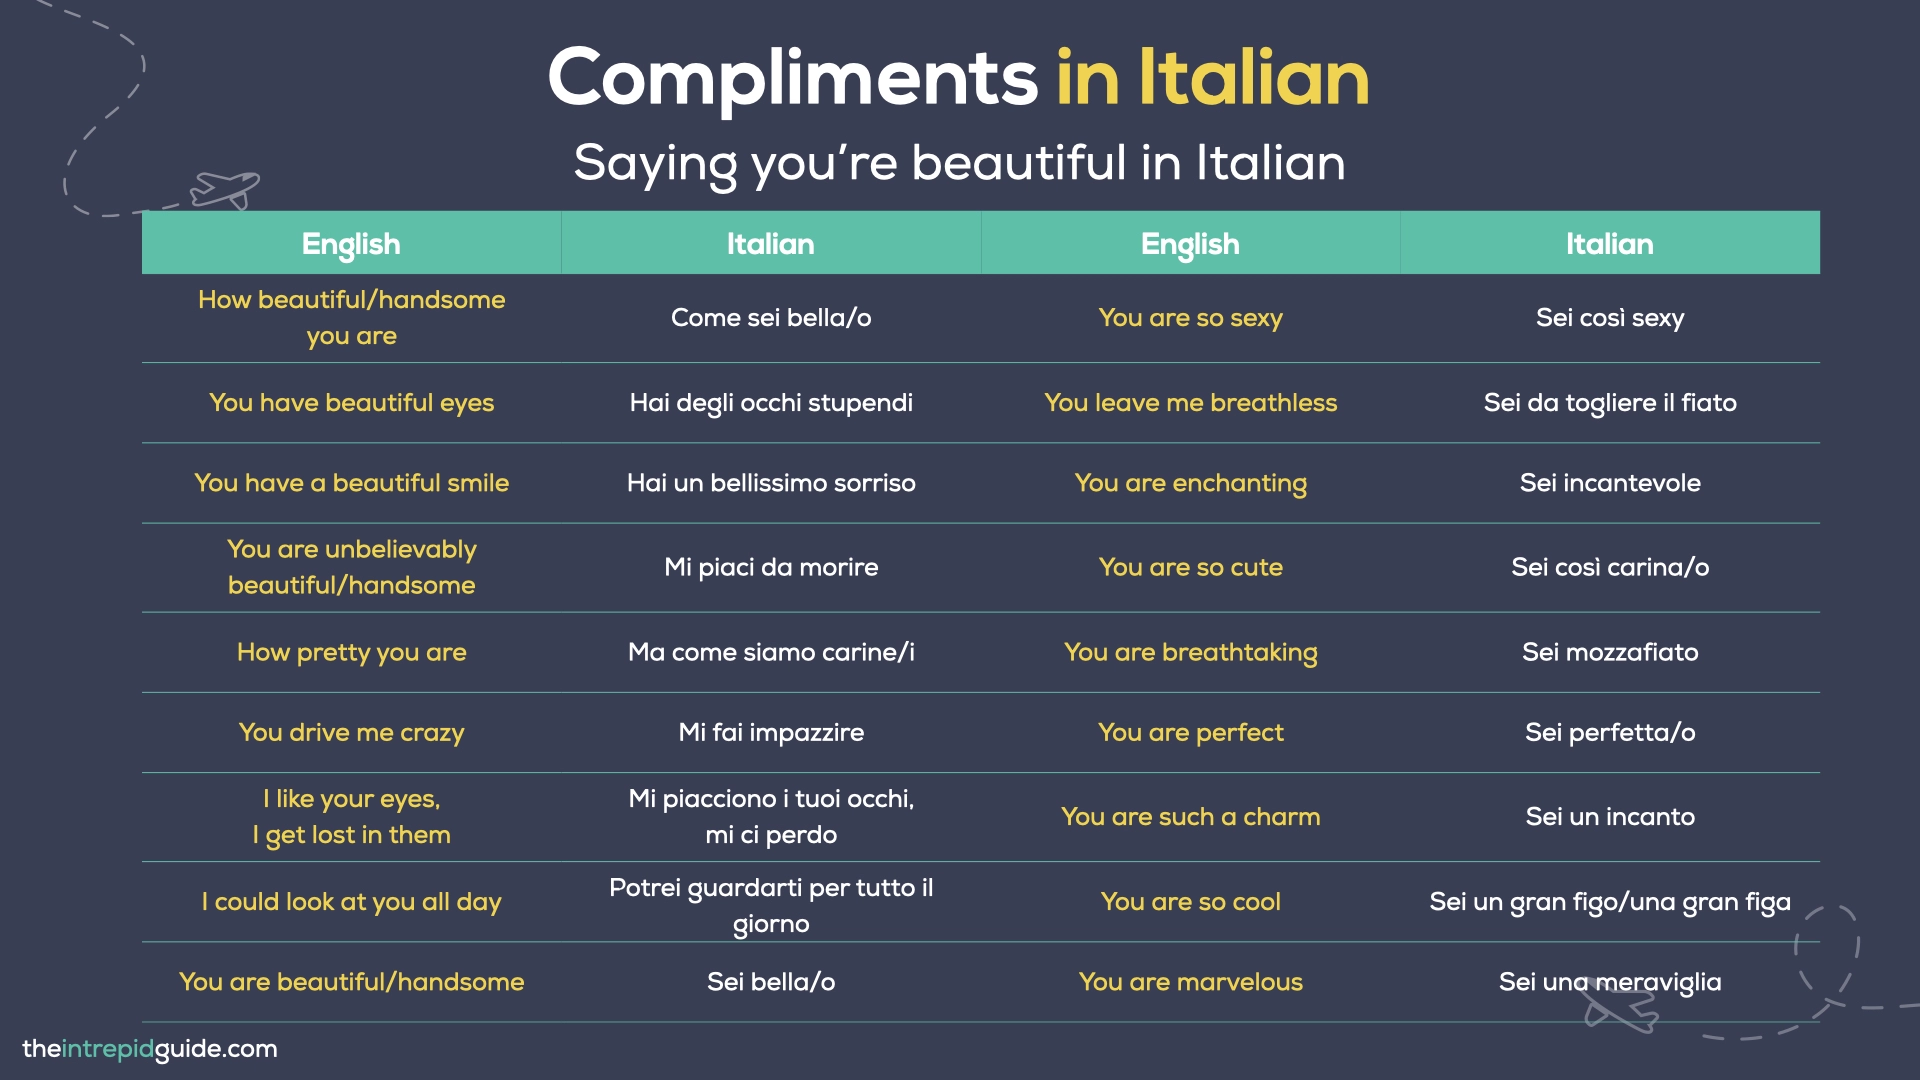 Compliments in Italian - Saying you’re beautiful in Italian